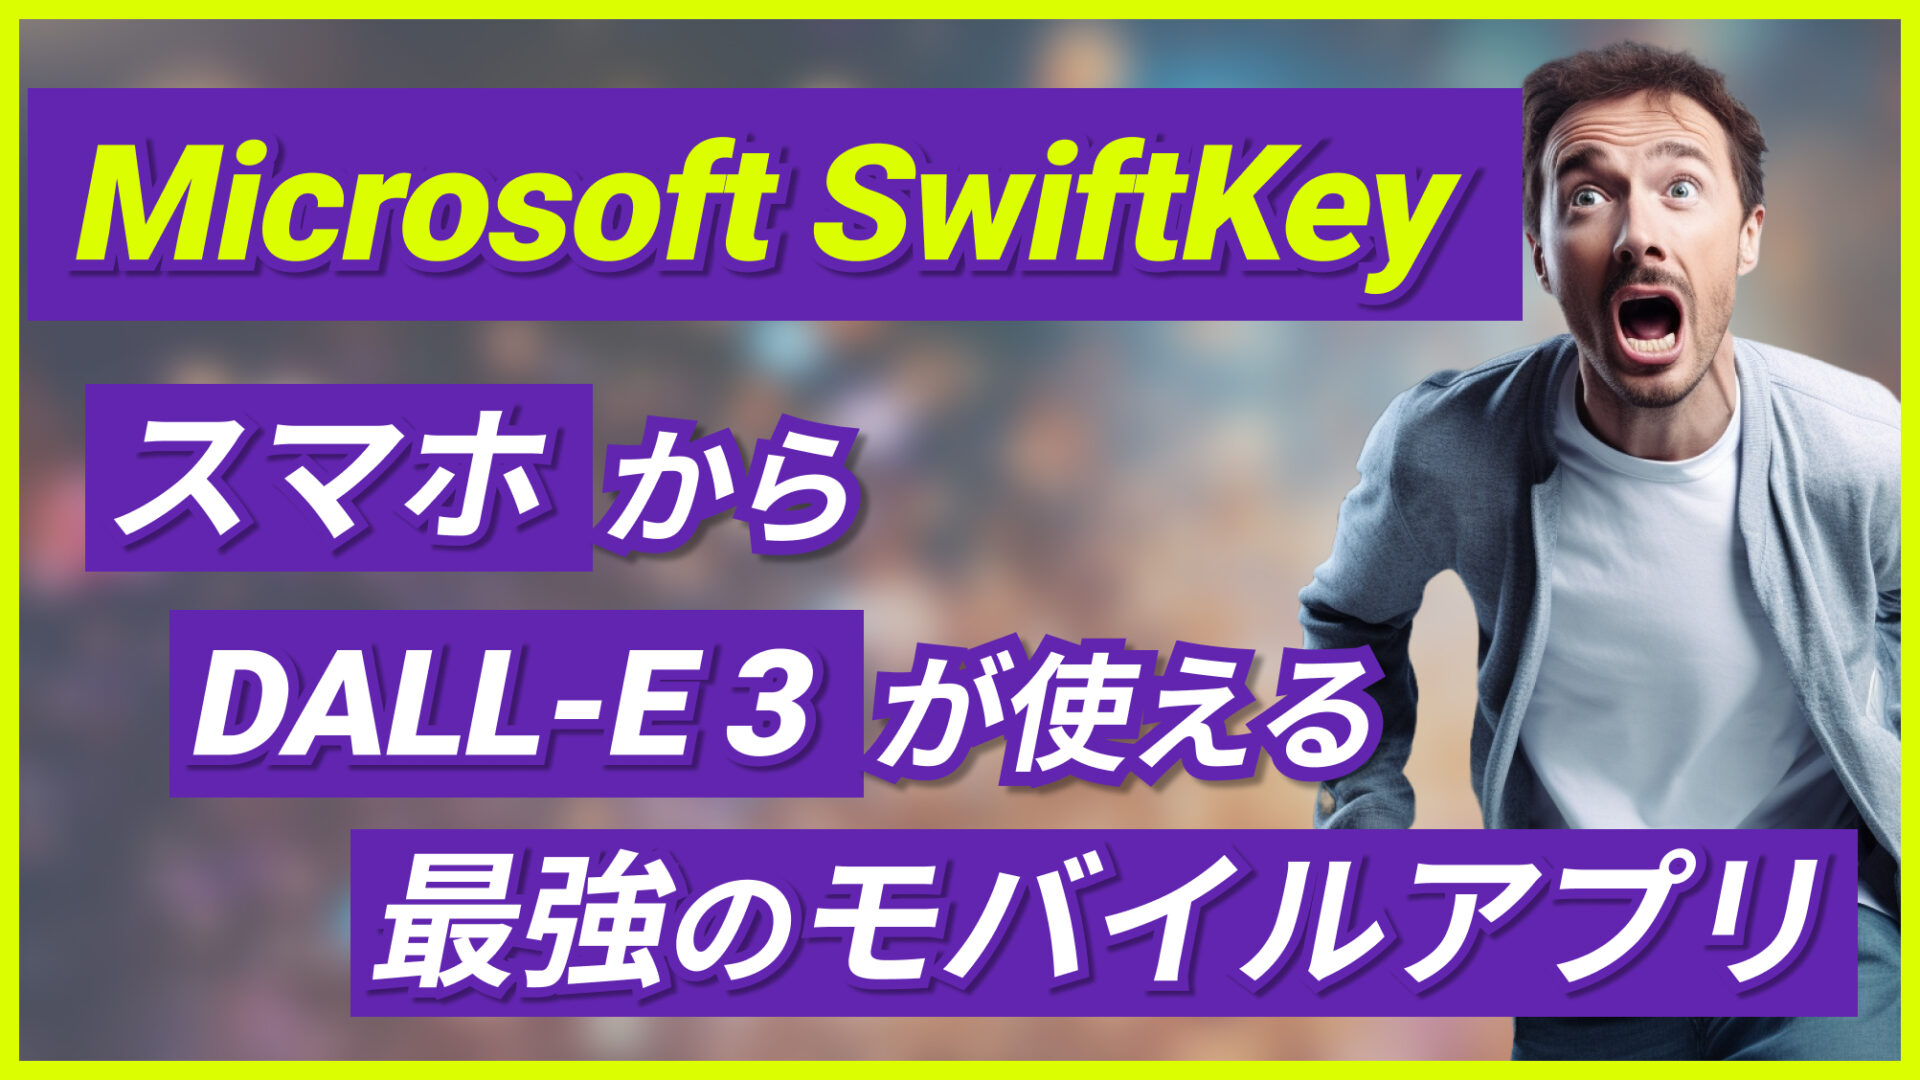 Microsoft-SwiftKey DALL-E-3 モバイルアプリ